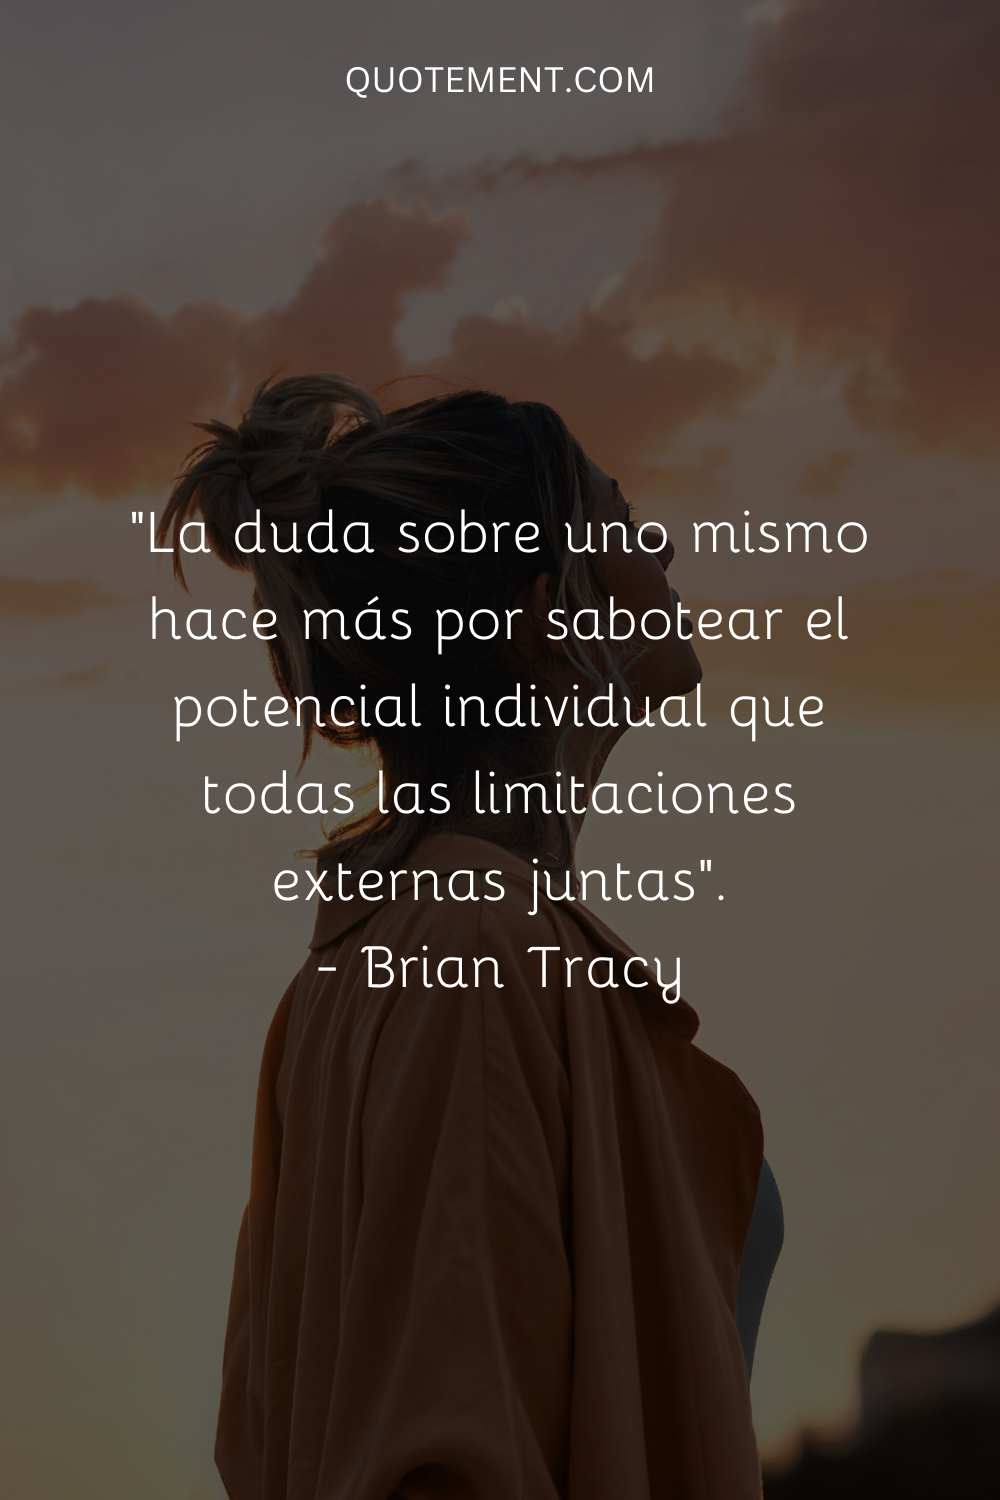 . "La duda sobre uno mismo hace más por sabotear el potencial individual que todas las limitaciones externas juntas". - Brian Tracy